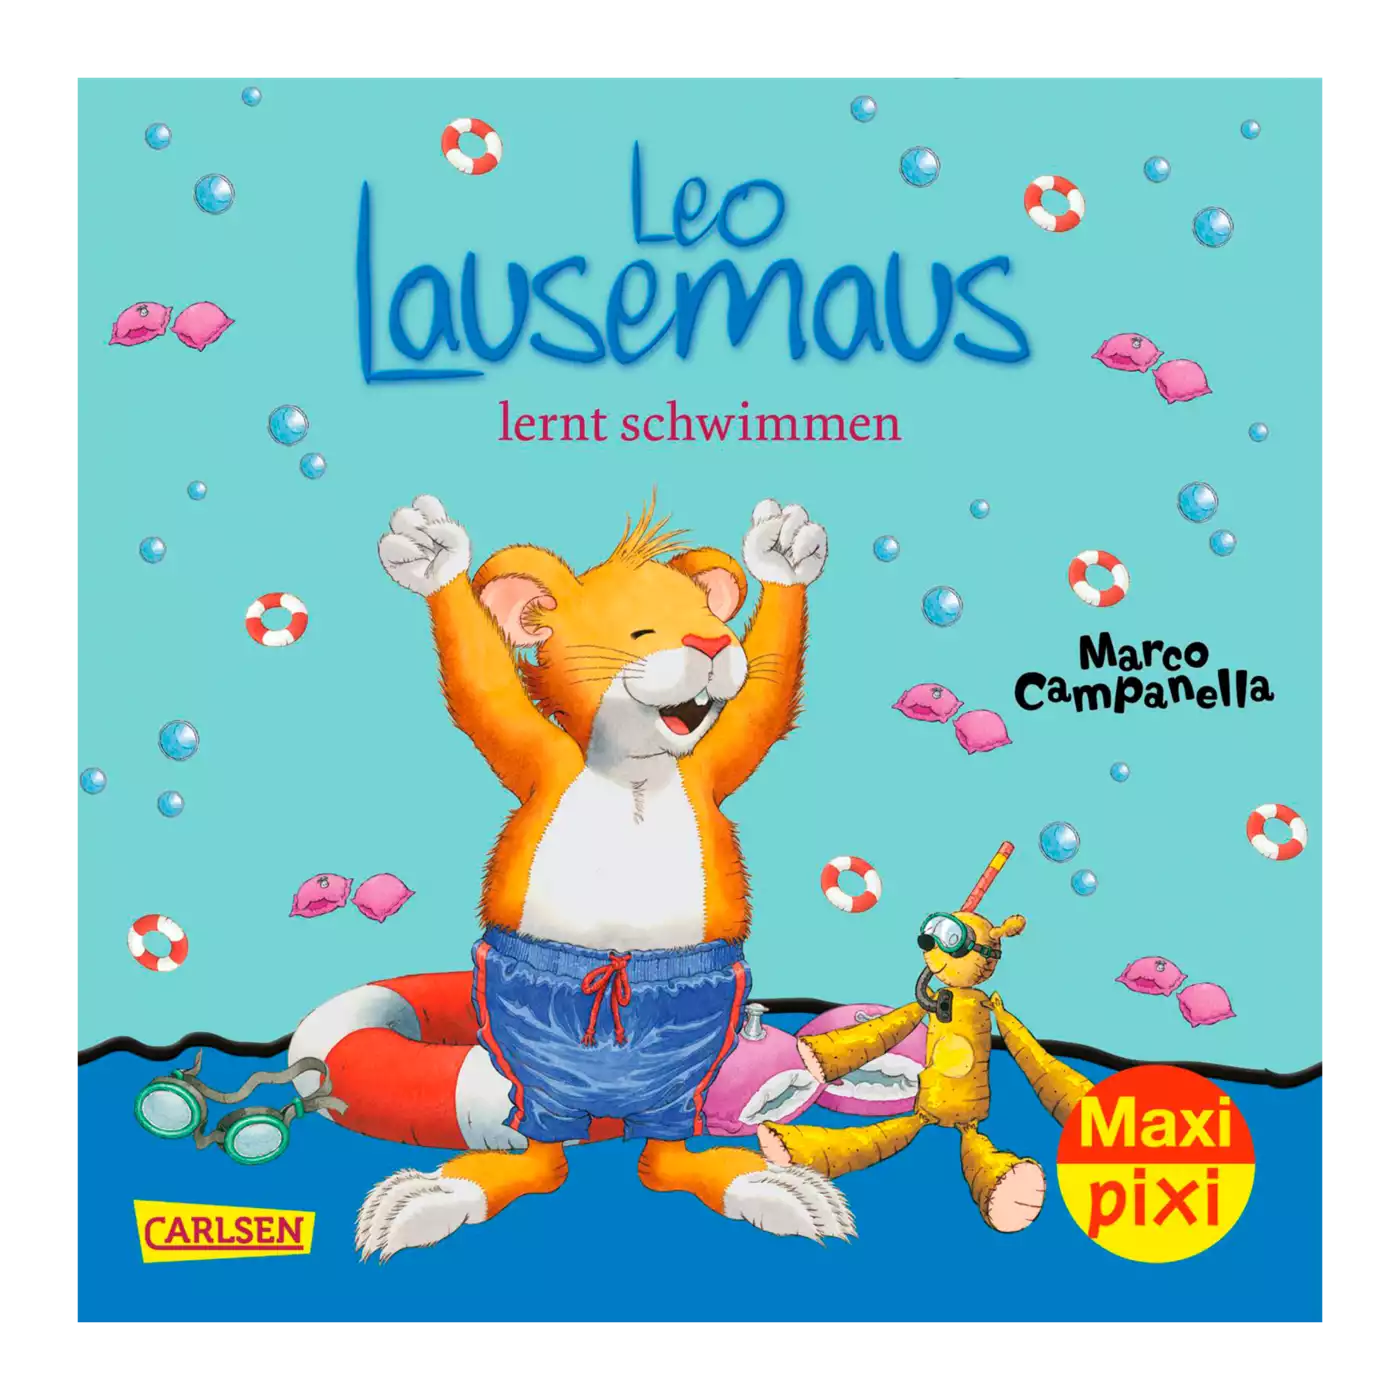 Maxi Pixi - Leo Lausemaus lernt schwimmen CARLSEN 2000572057905 1